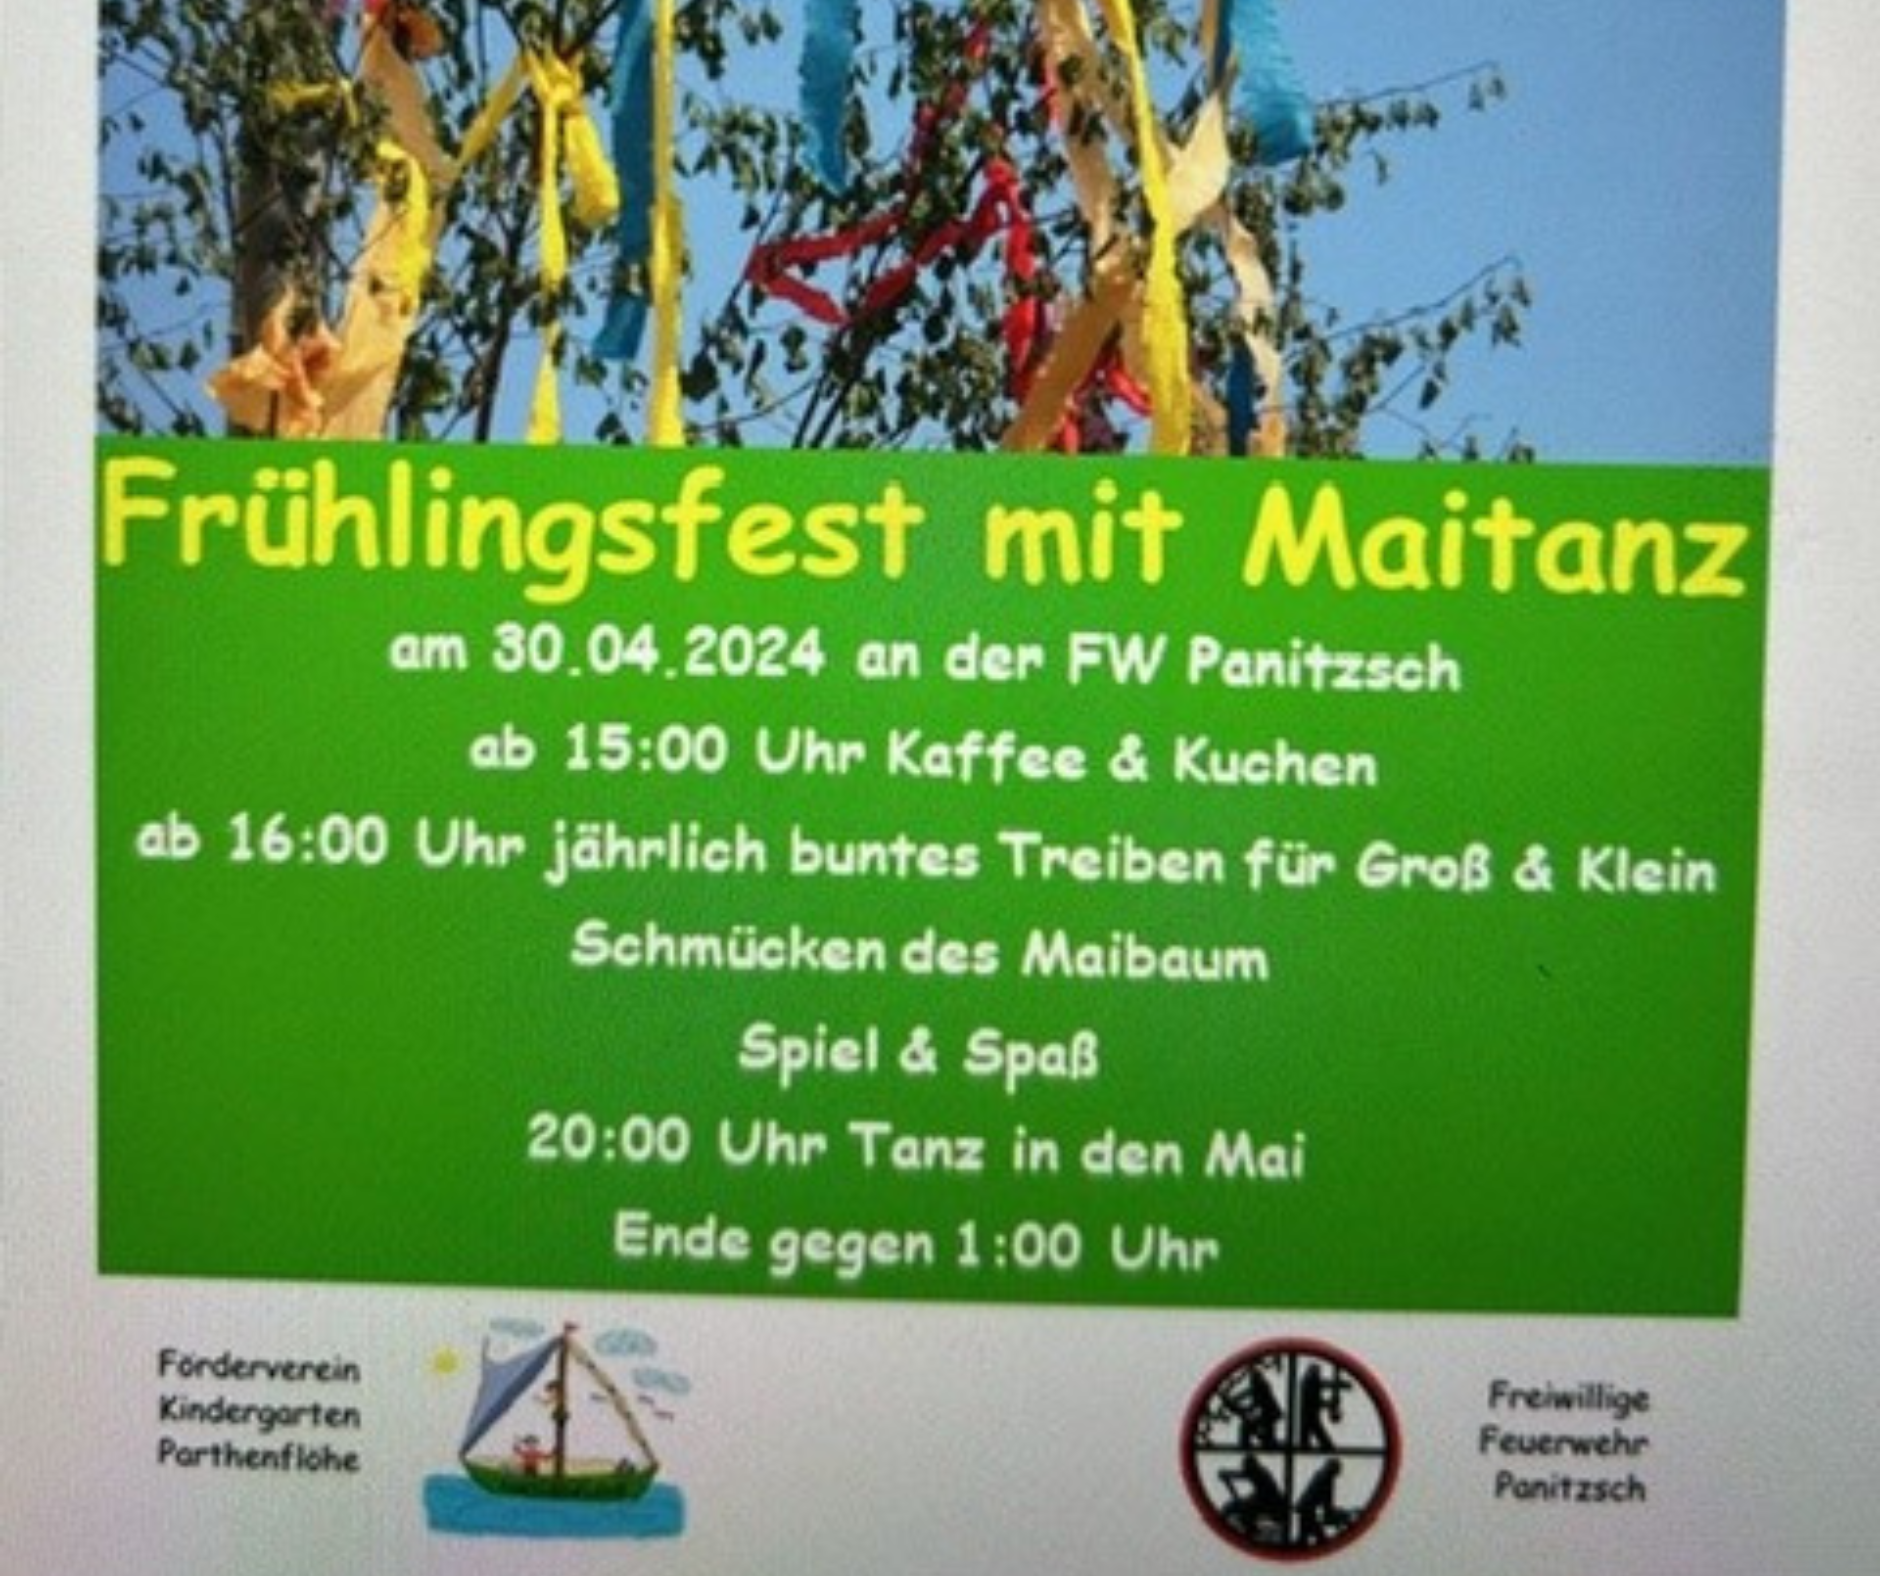 Frühlingsfest mit Maitanz @ Feuerwehr Panitzsch